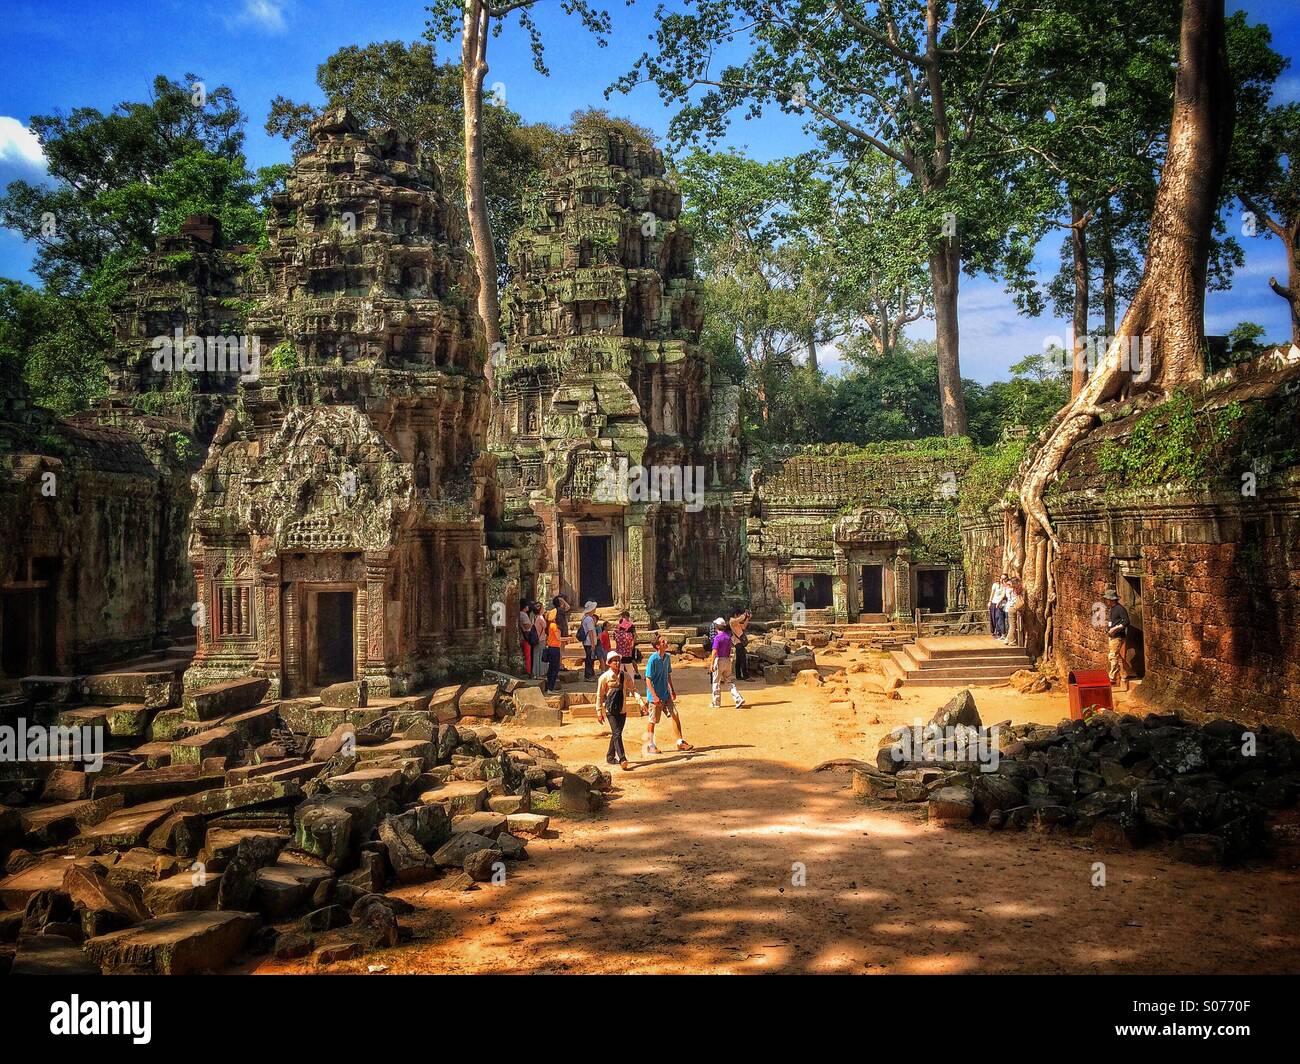 Ta Prohm tempio in Siem Reap, Cambogia, posizione di Lara Croft Tomb Raider movie Foto Stock